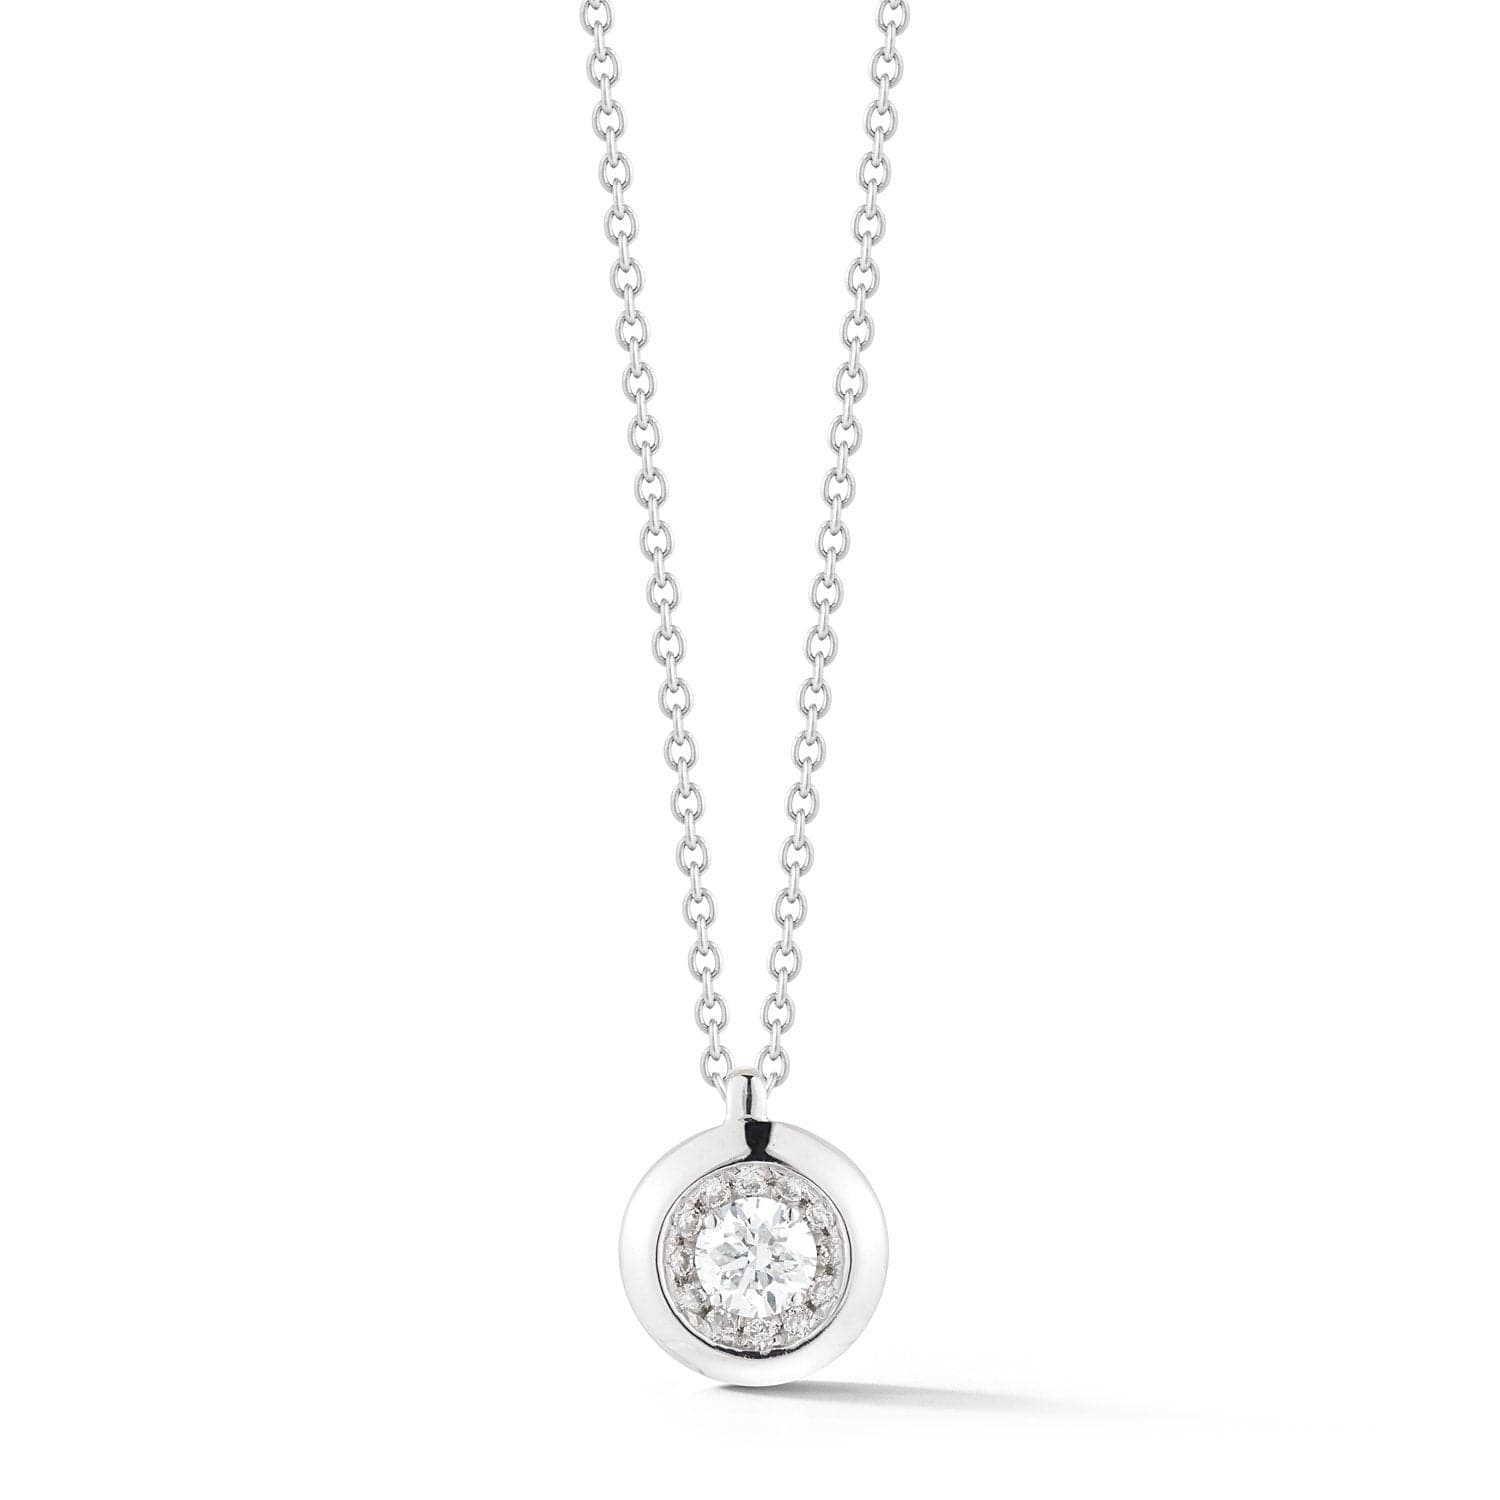 Dana Rebecca Designs Necklaces and Pendants Lauren Joy Large Bezel Halo Necklace 18"